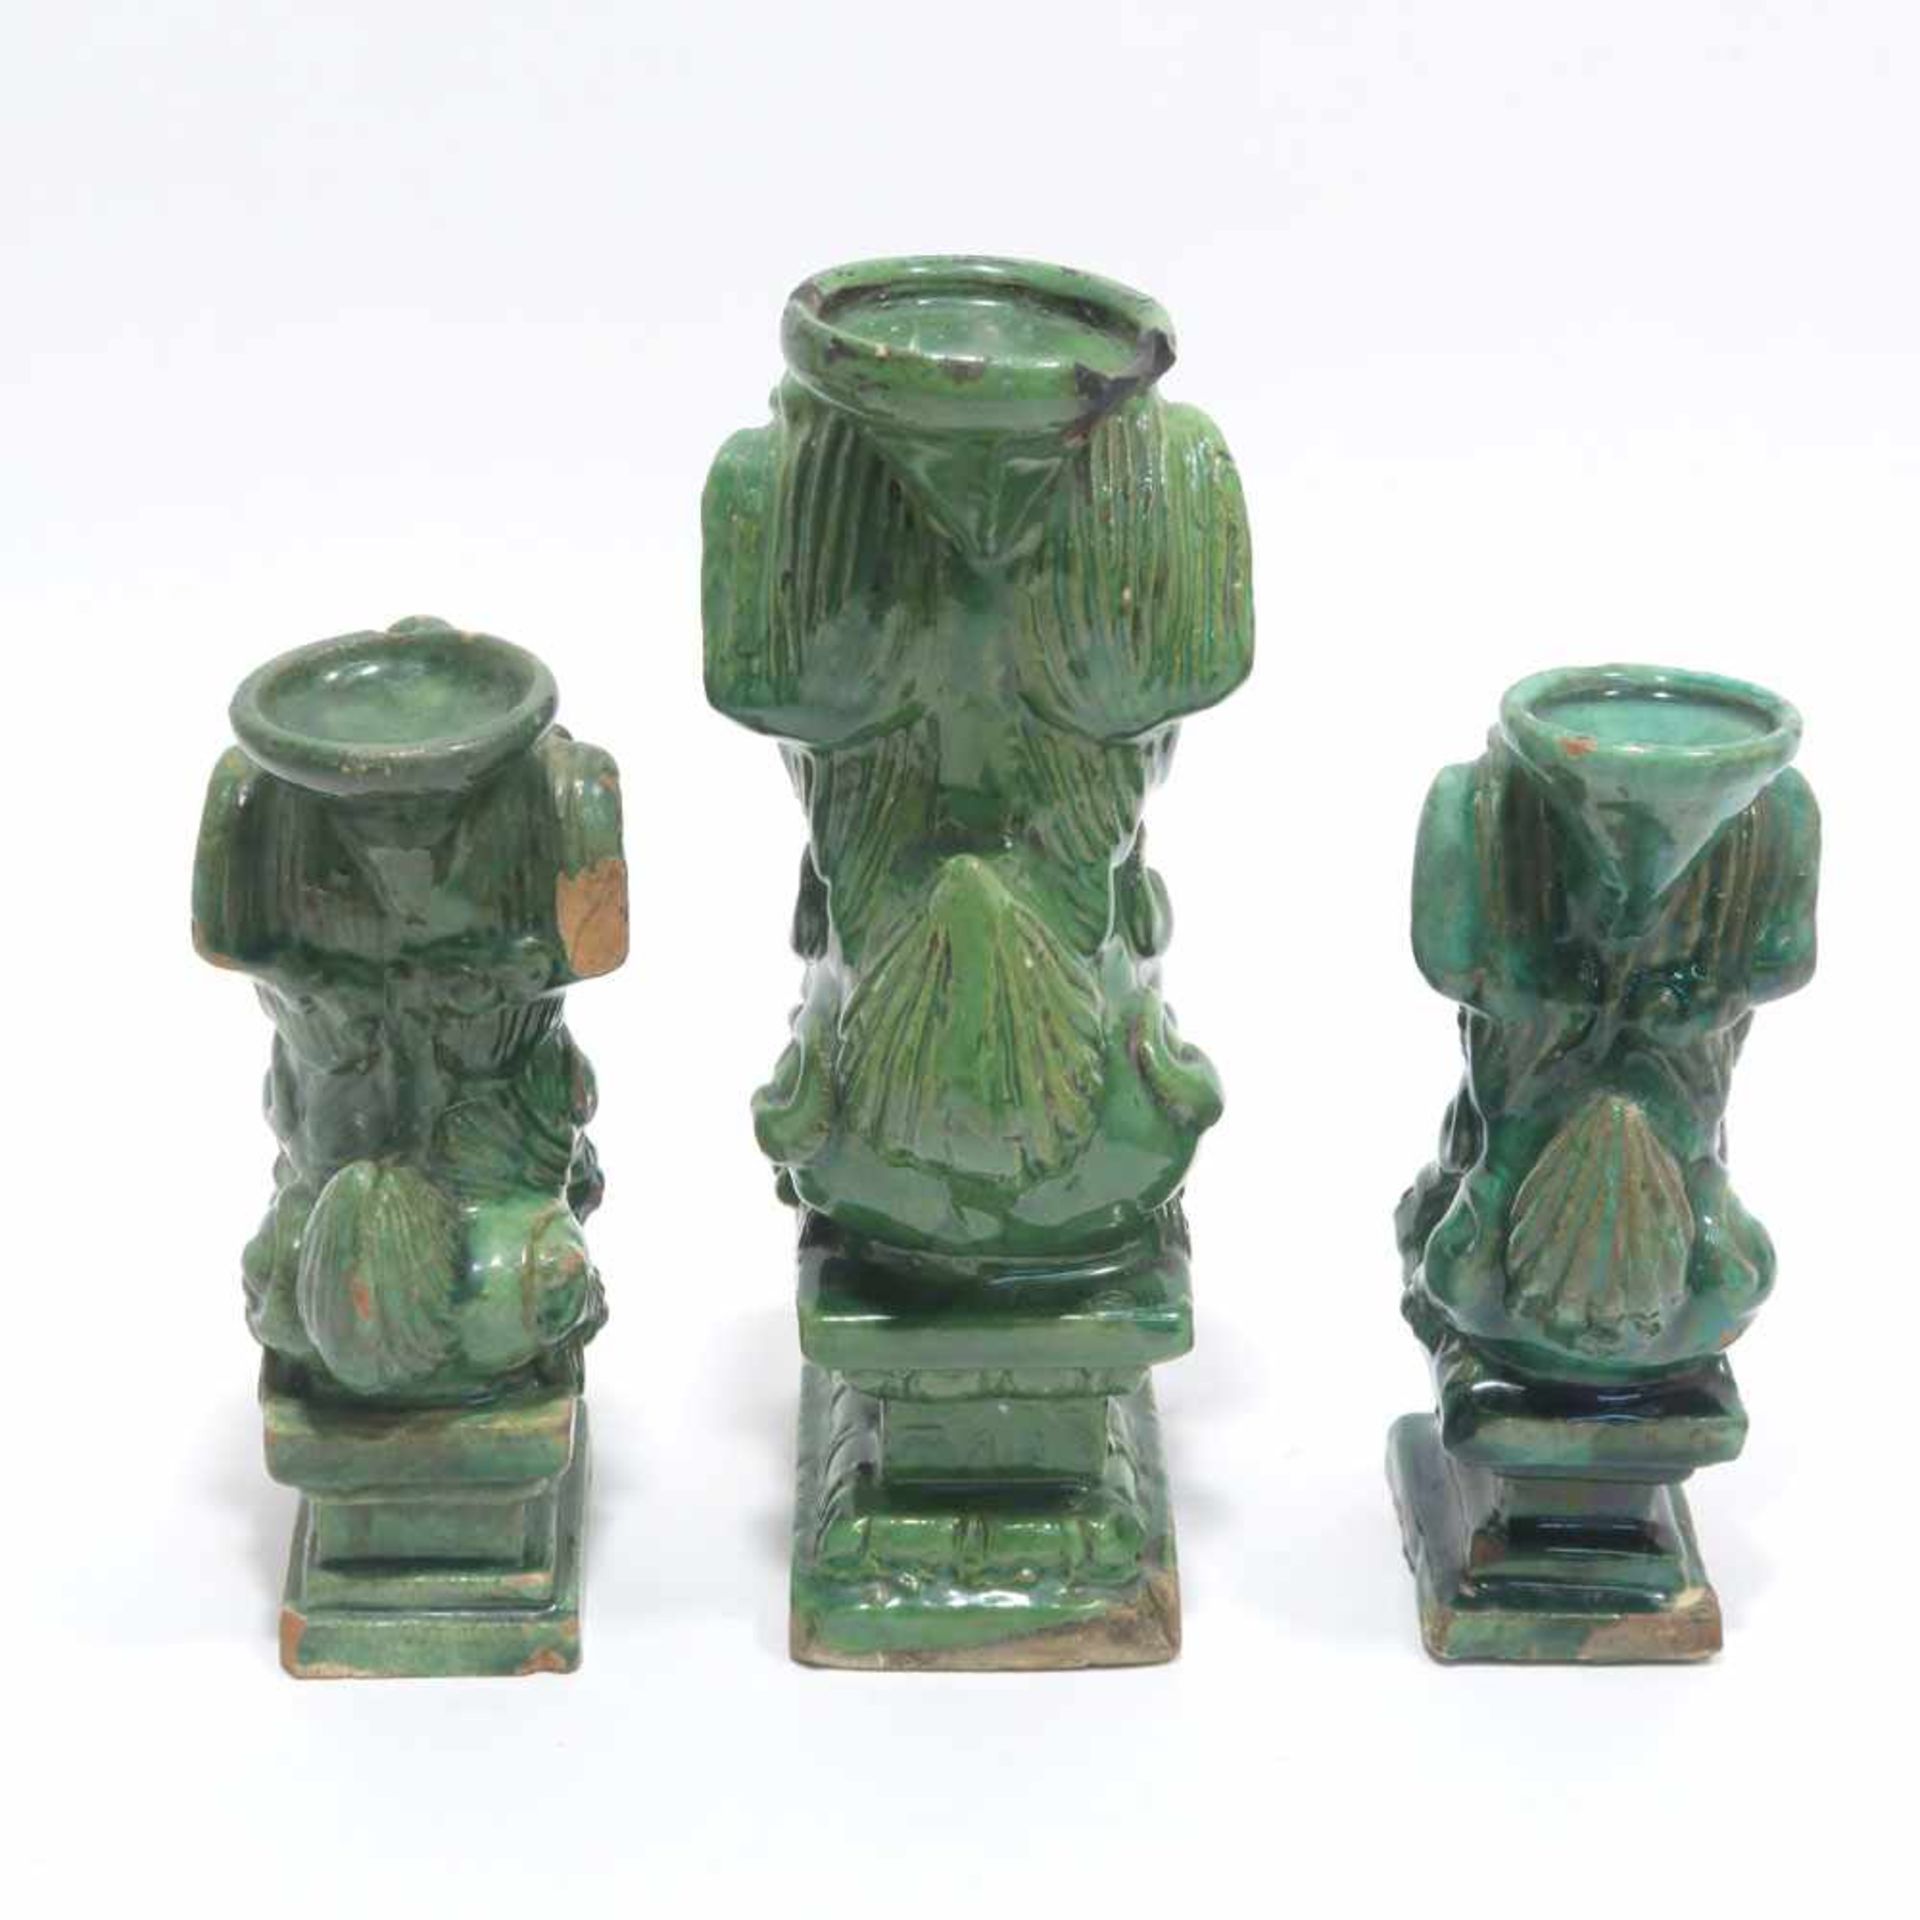 Drei Fo-HundeChina. Keramik, roter Scherben, grün glasiert. Best. H. 15,5 cm bis 21 cm.- - -26. - Bild 4 aus 4